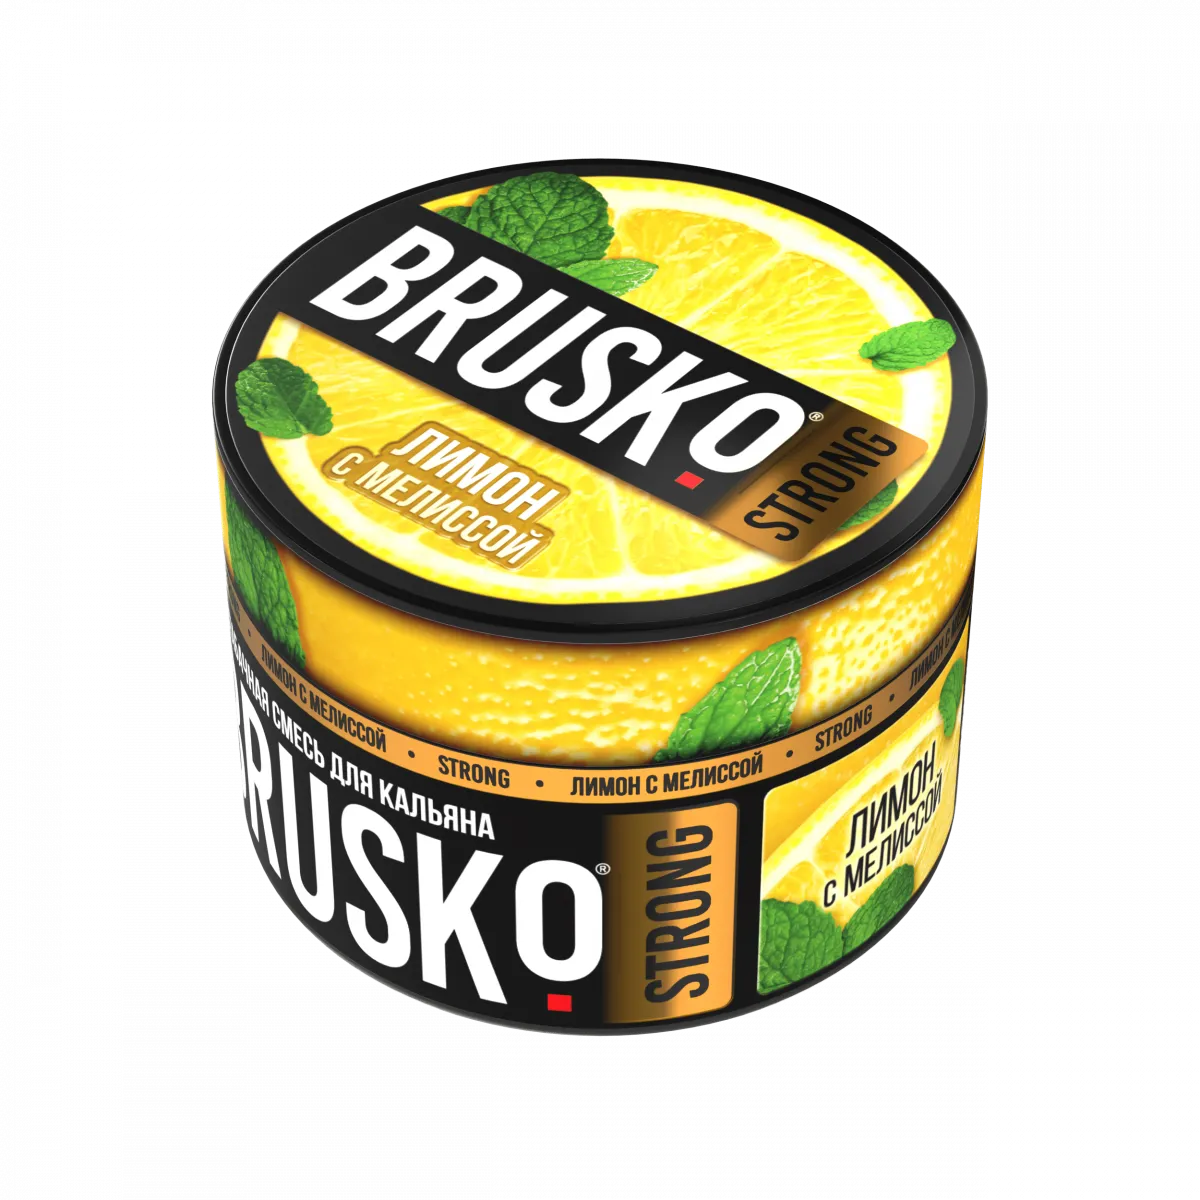 Бруско манго апельсин мята. Бестабачная смесь brusko Zero маракуйя, 50г. Brusko Medium 50g - манго с маракуйей. Lemon media